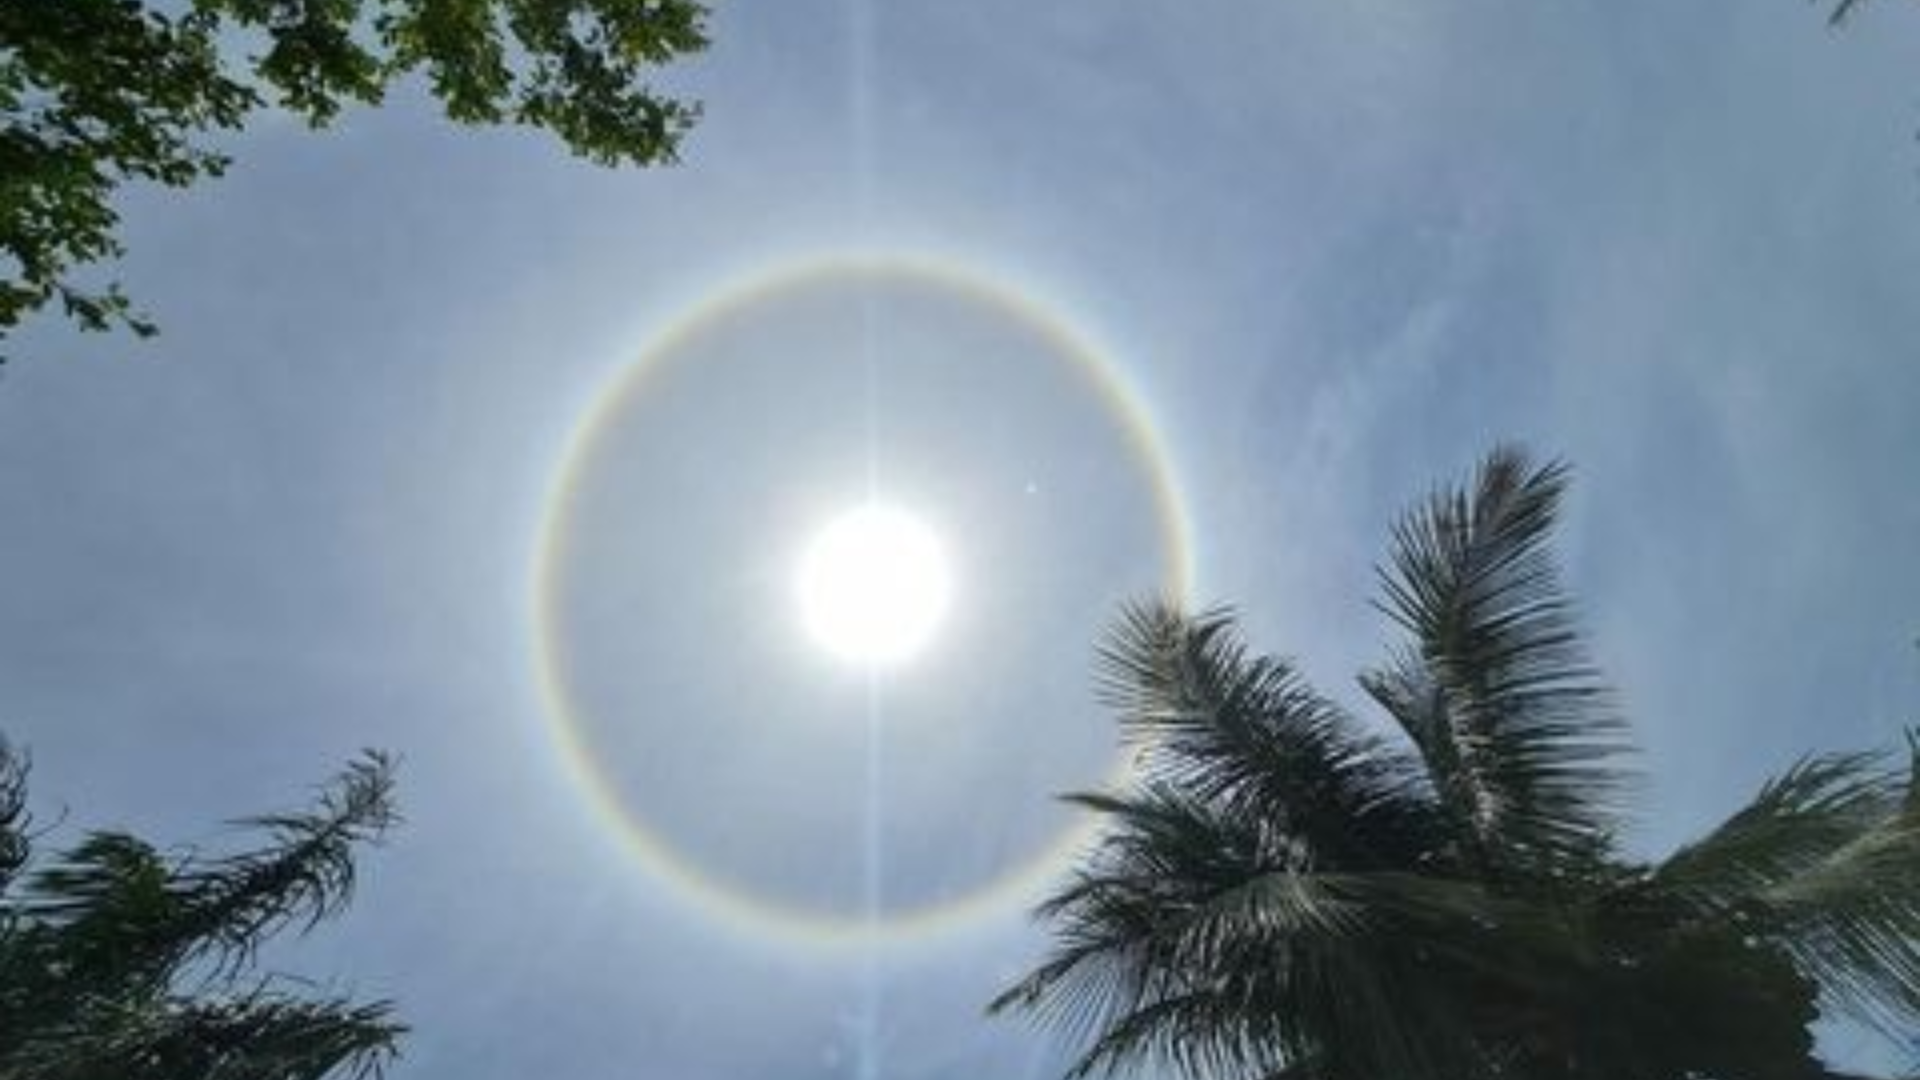 Fenômeno se parece com um arco-íris ao redor do sol e só se forma se o disco solar estiver envolto em uma camada de nuvens altas, do tipo cirrustratus